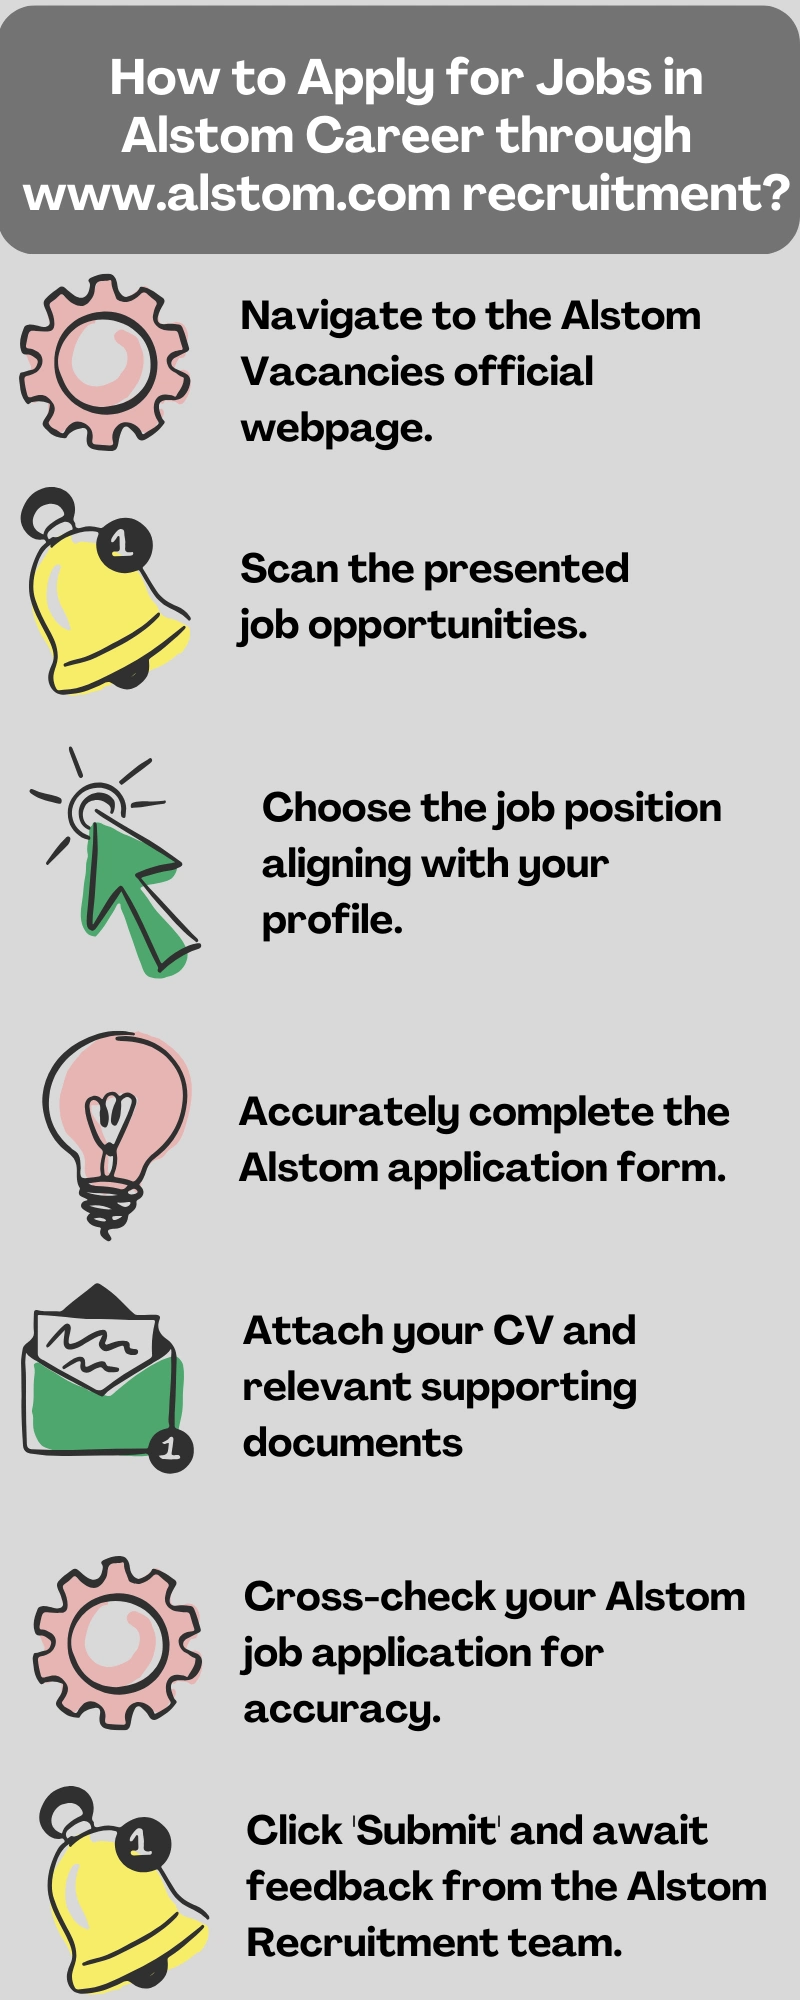 How to Apply for Jobs in Alstom Career through www.alstom.com recruitment?